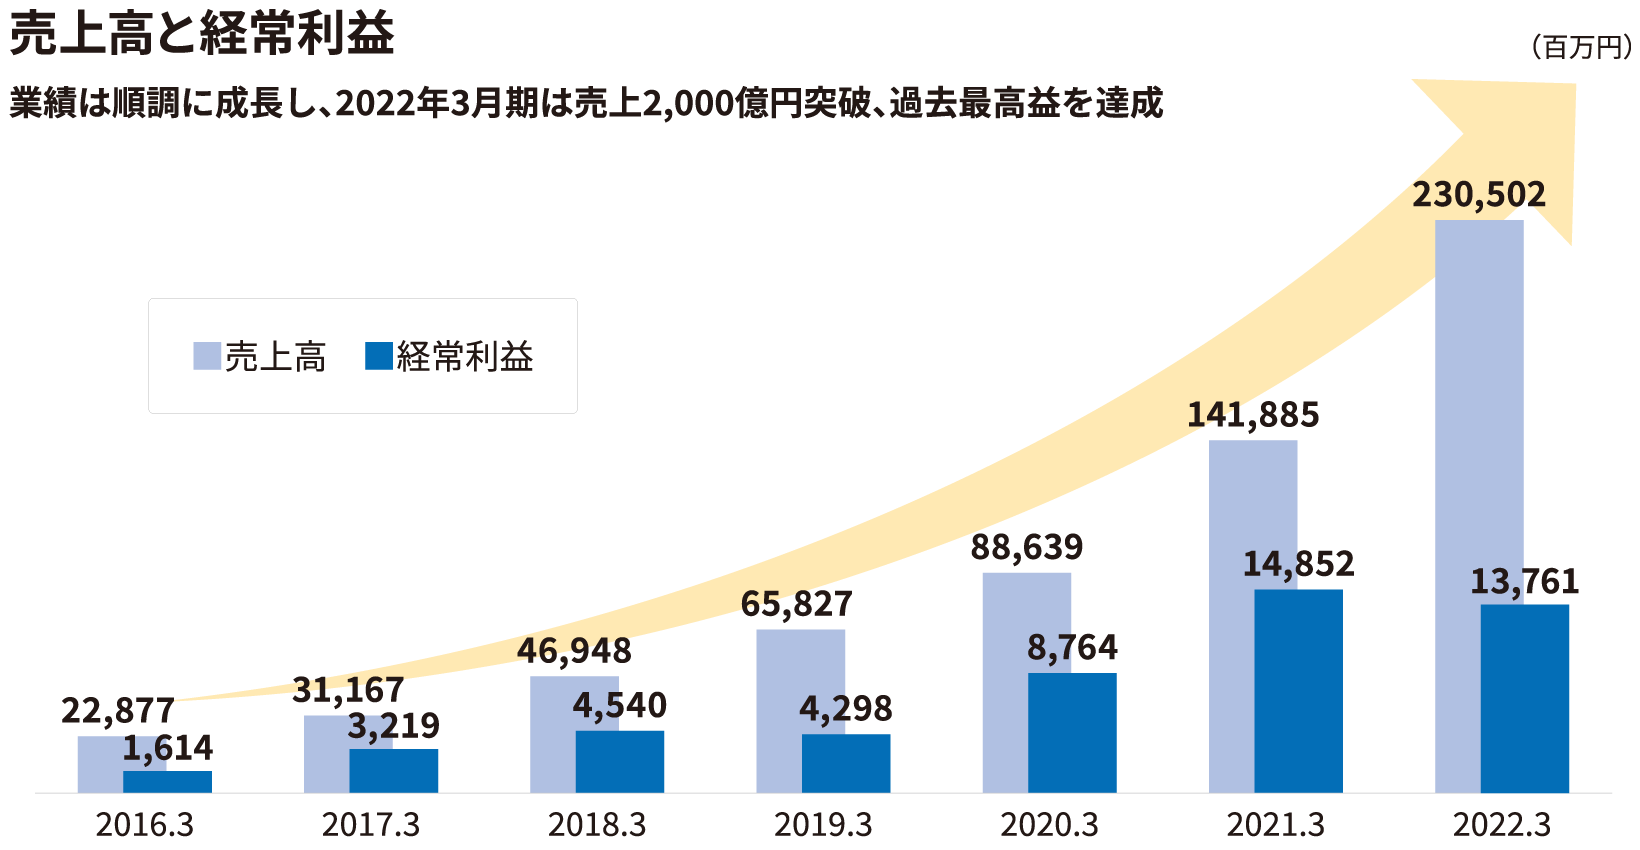 イメージ:2016年と2022年の売上高を比較